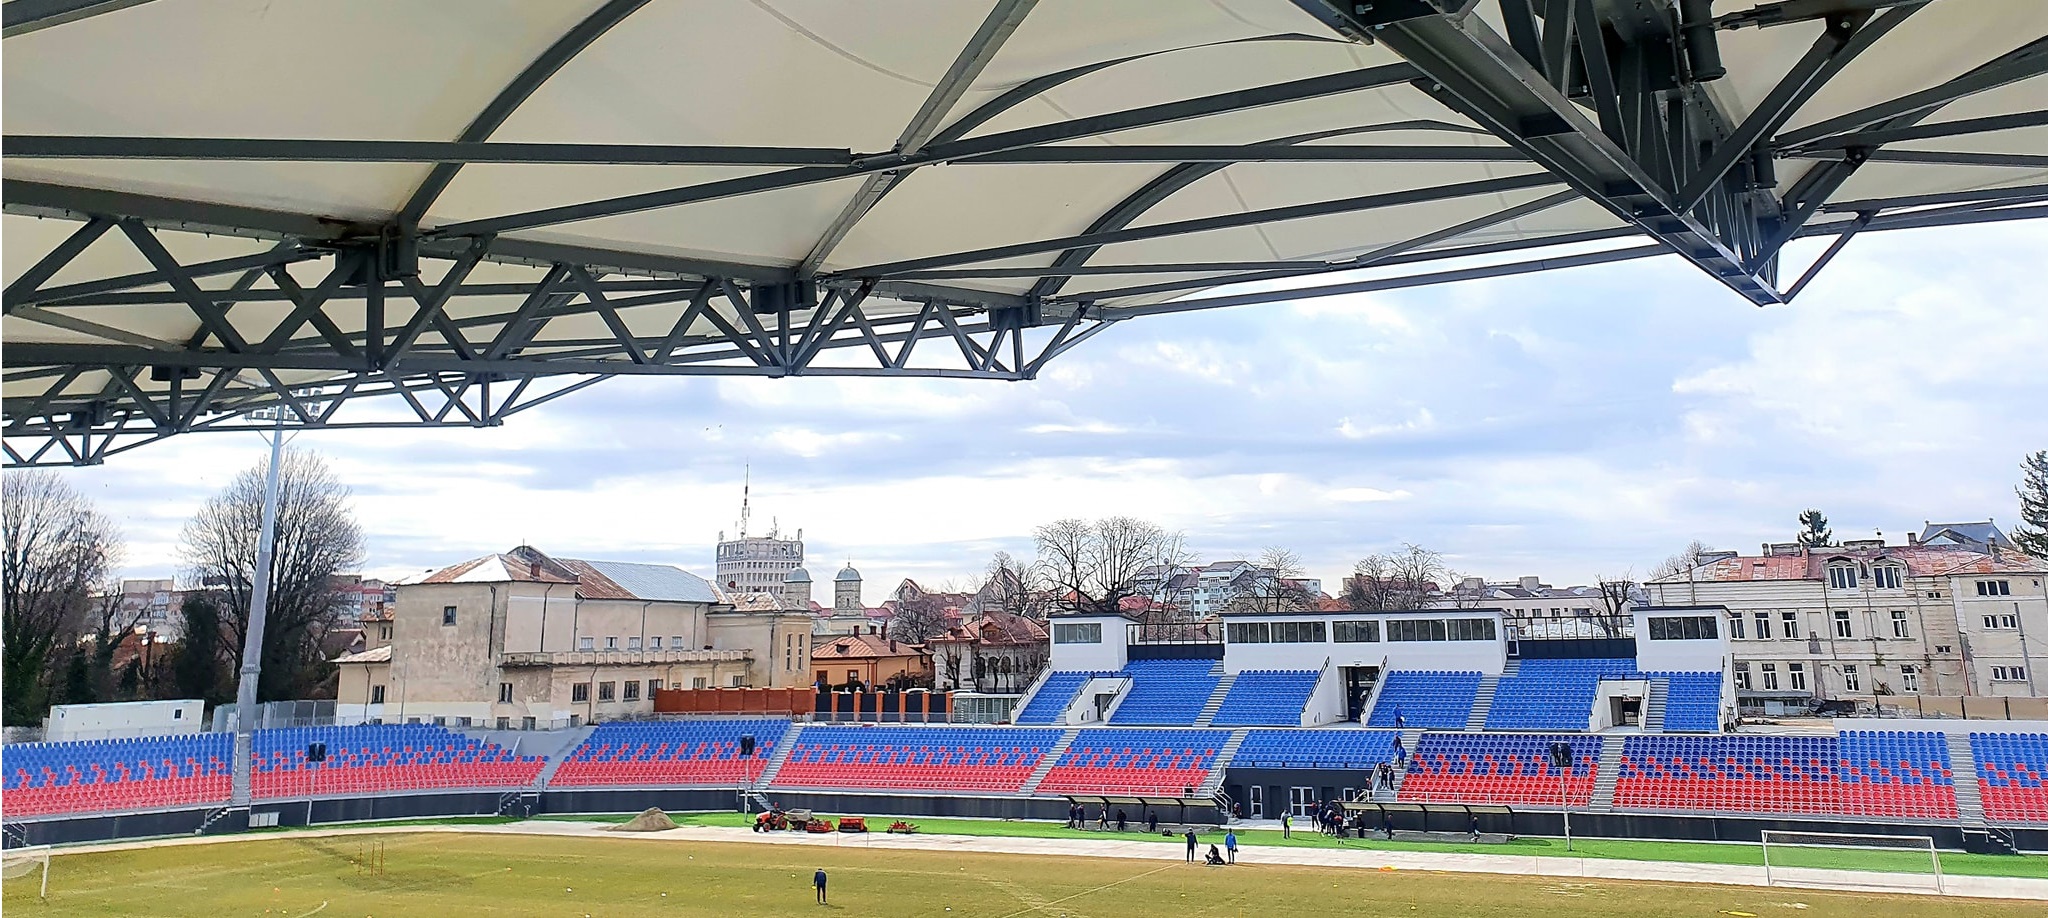 Clarificări legate de reconstruirea Stadionului din Târgoviște